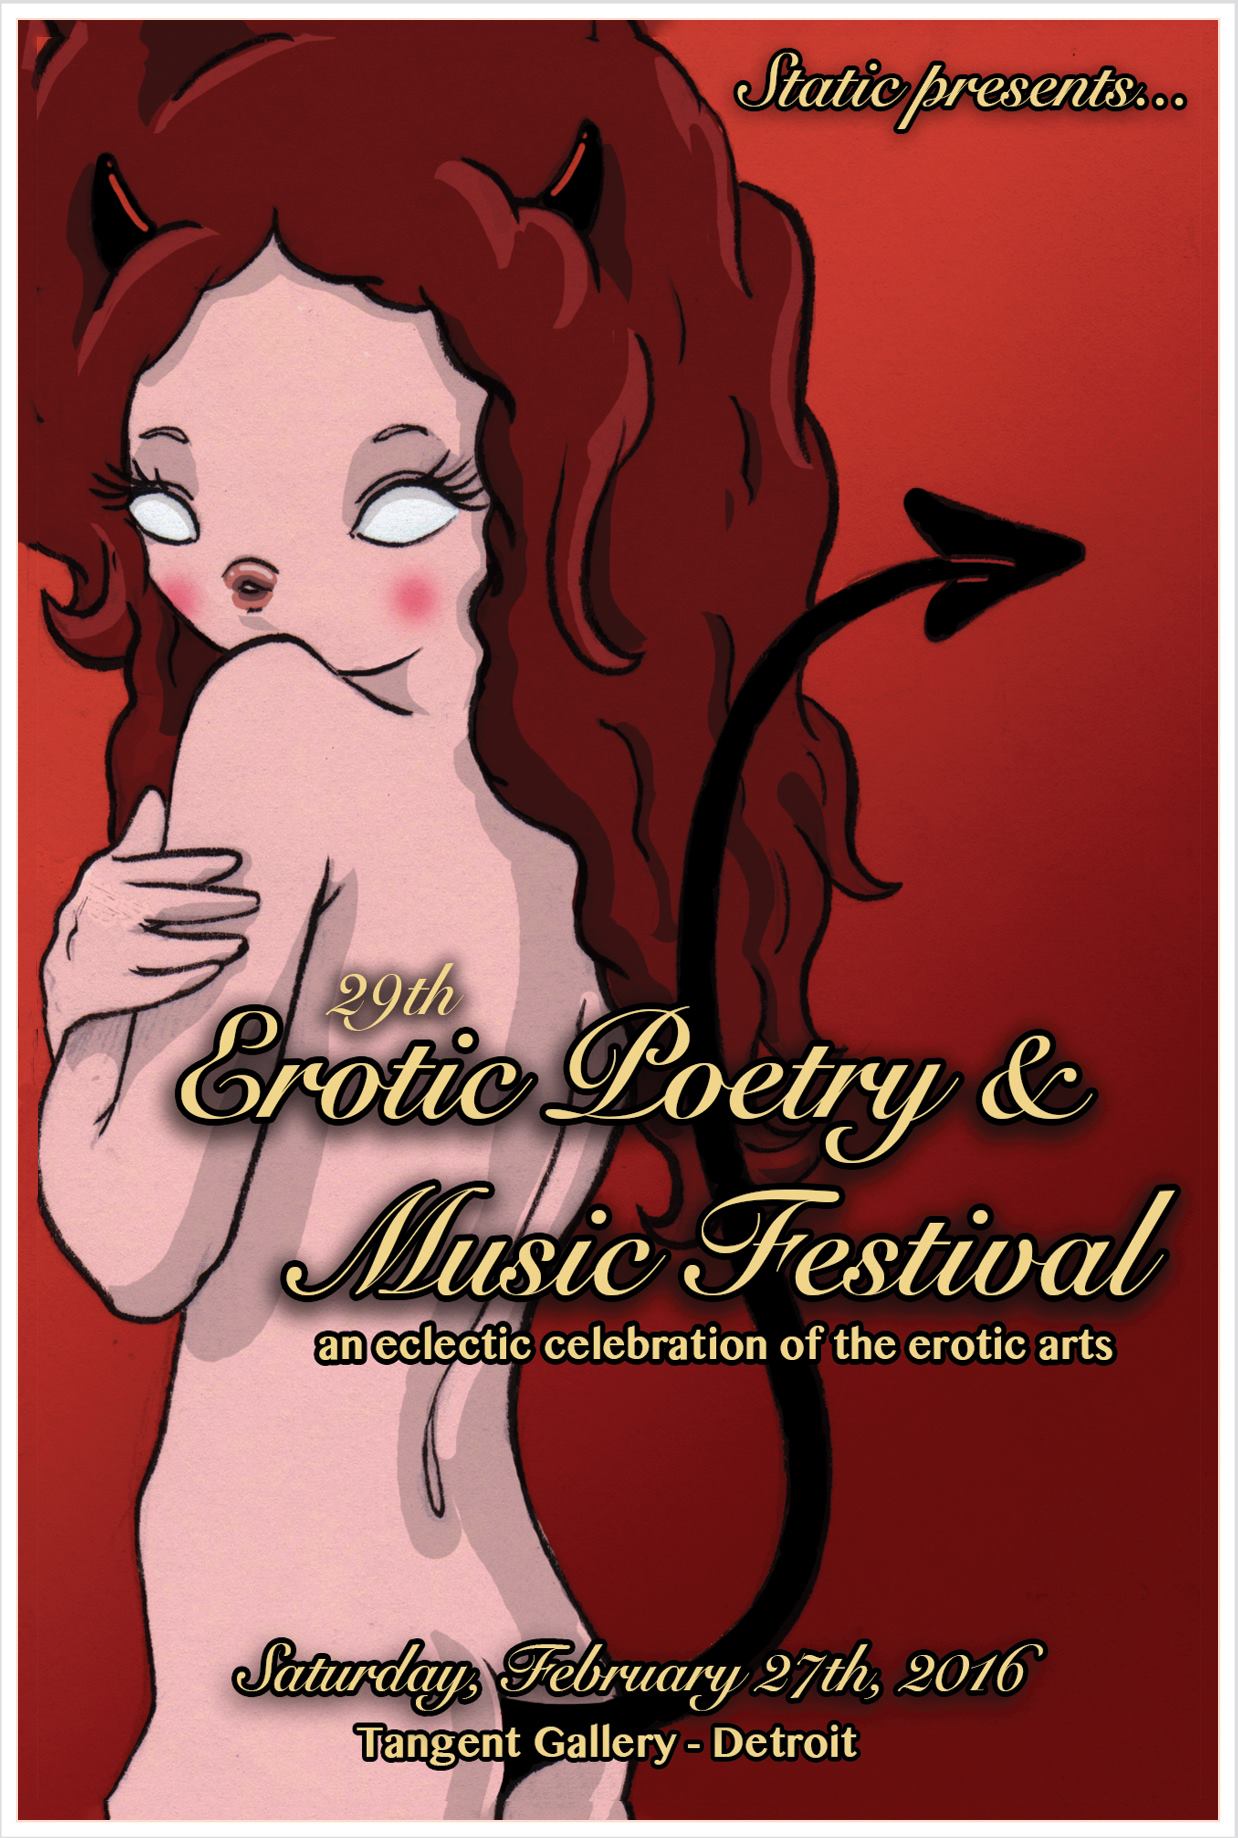 Erotic Poetry Festival